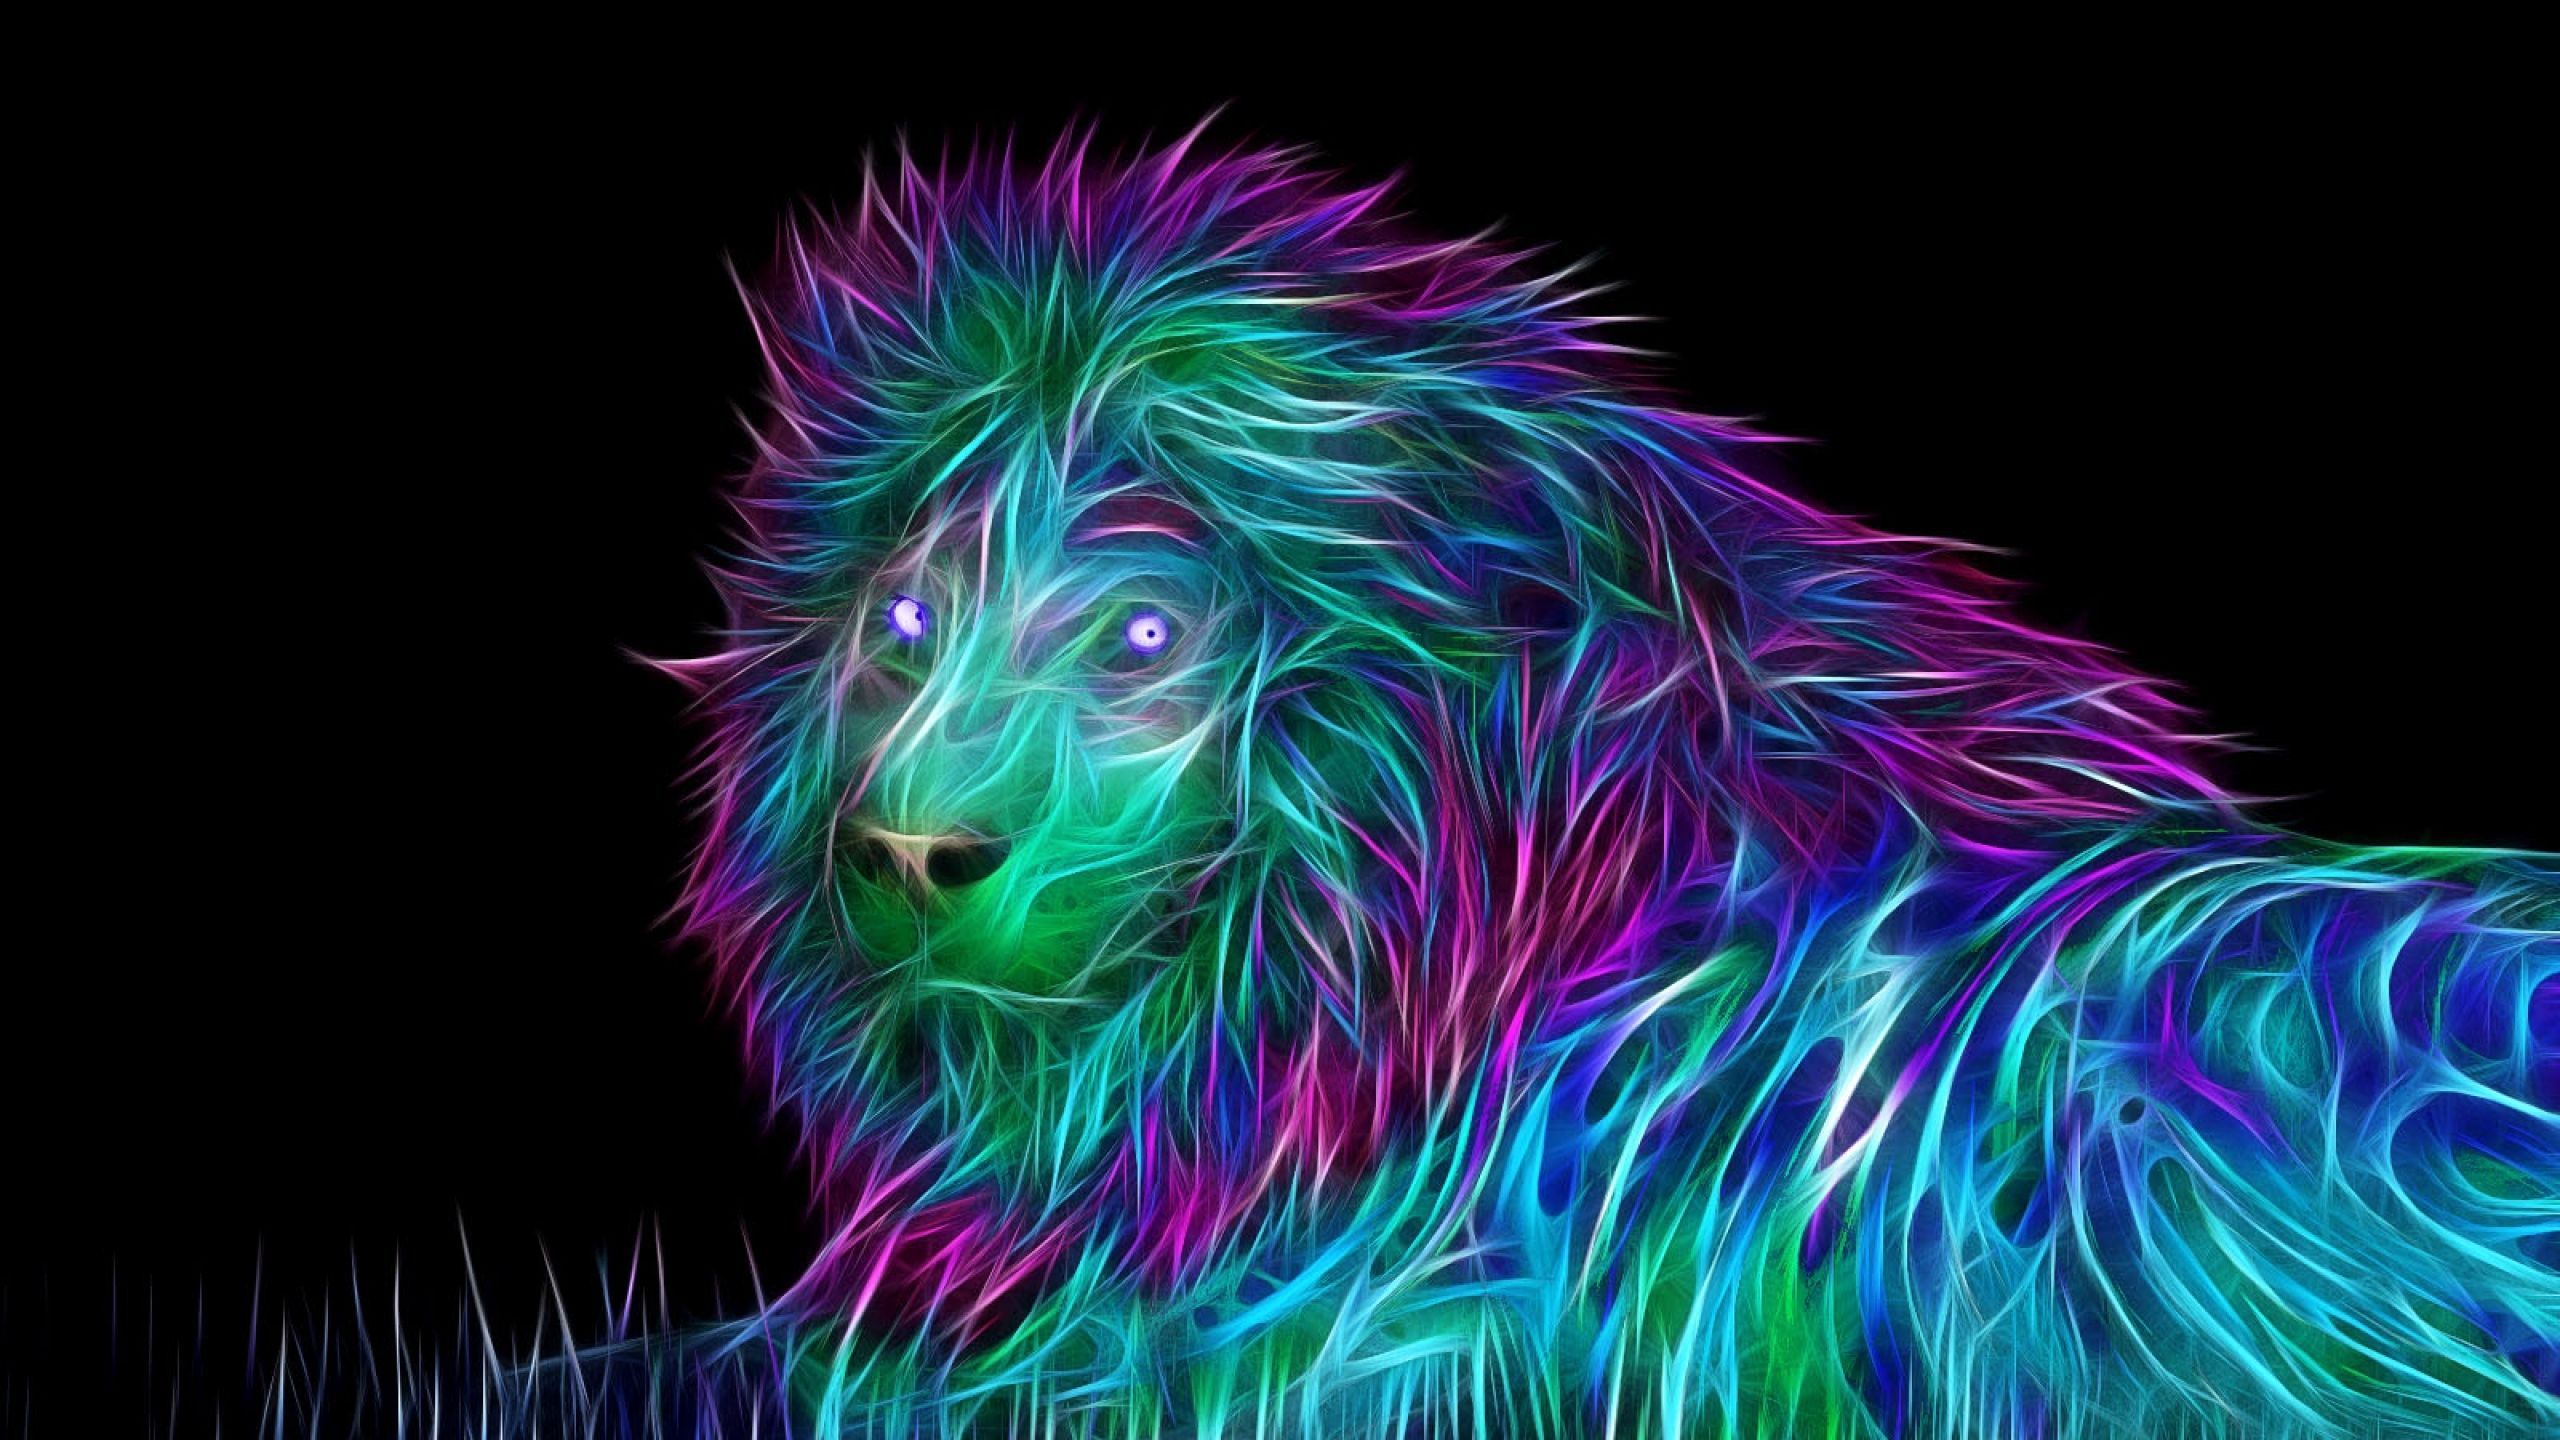 Neon lion wallpaper. Abstract art wallpaper, Abstract lion art, Abstract lion